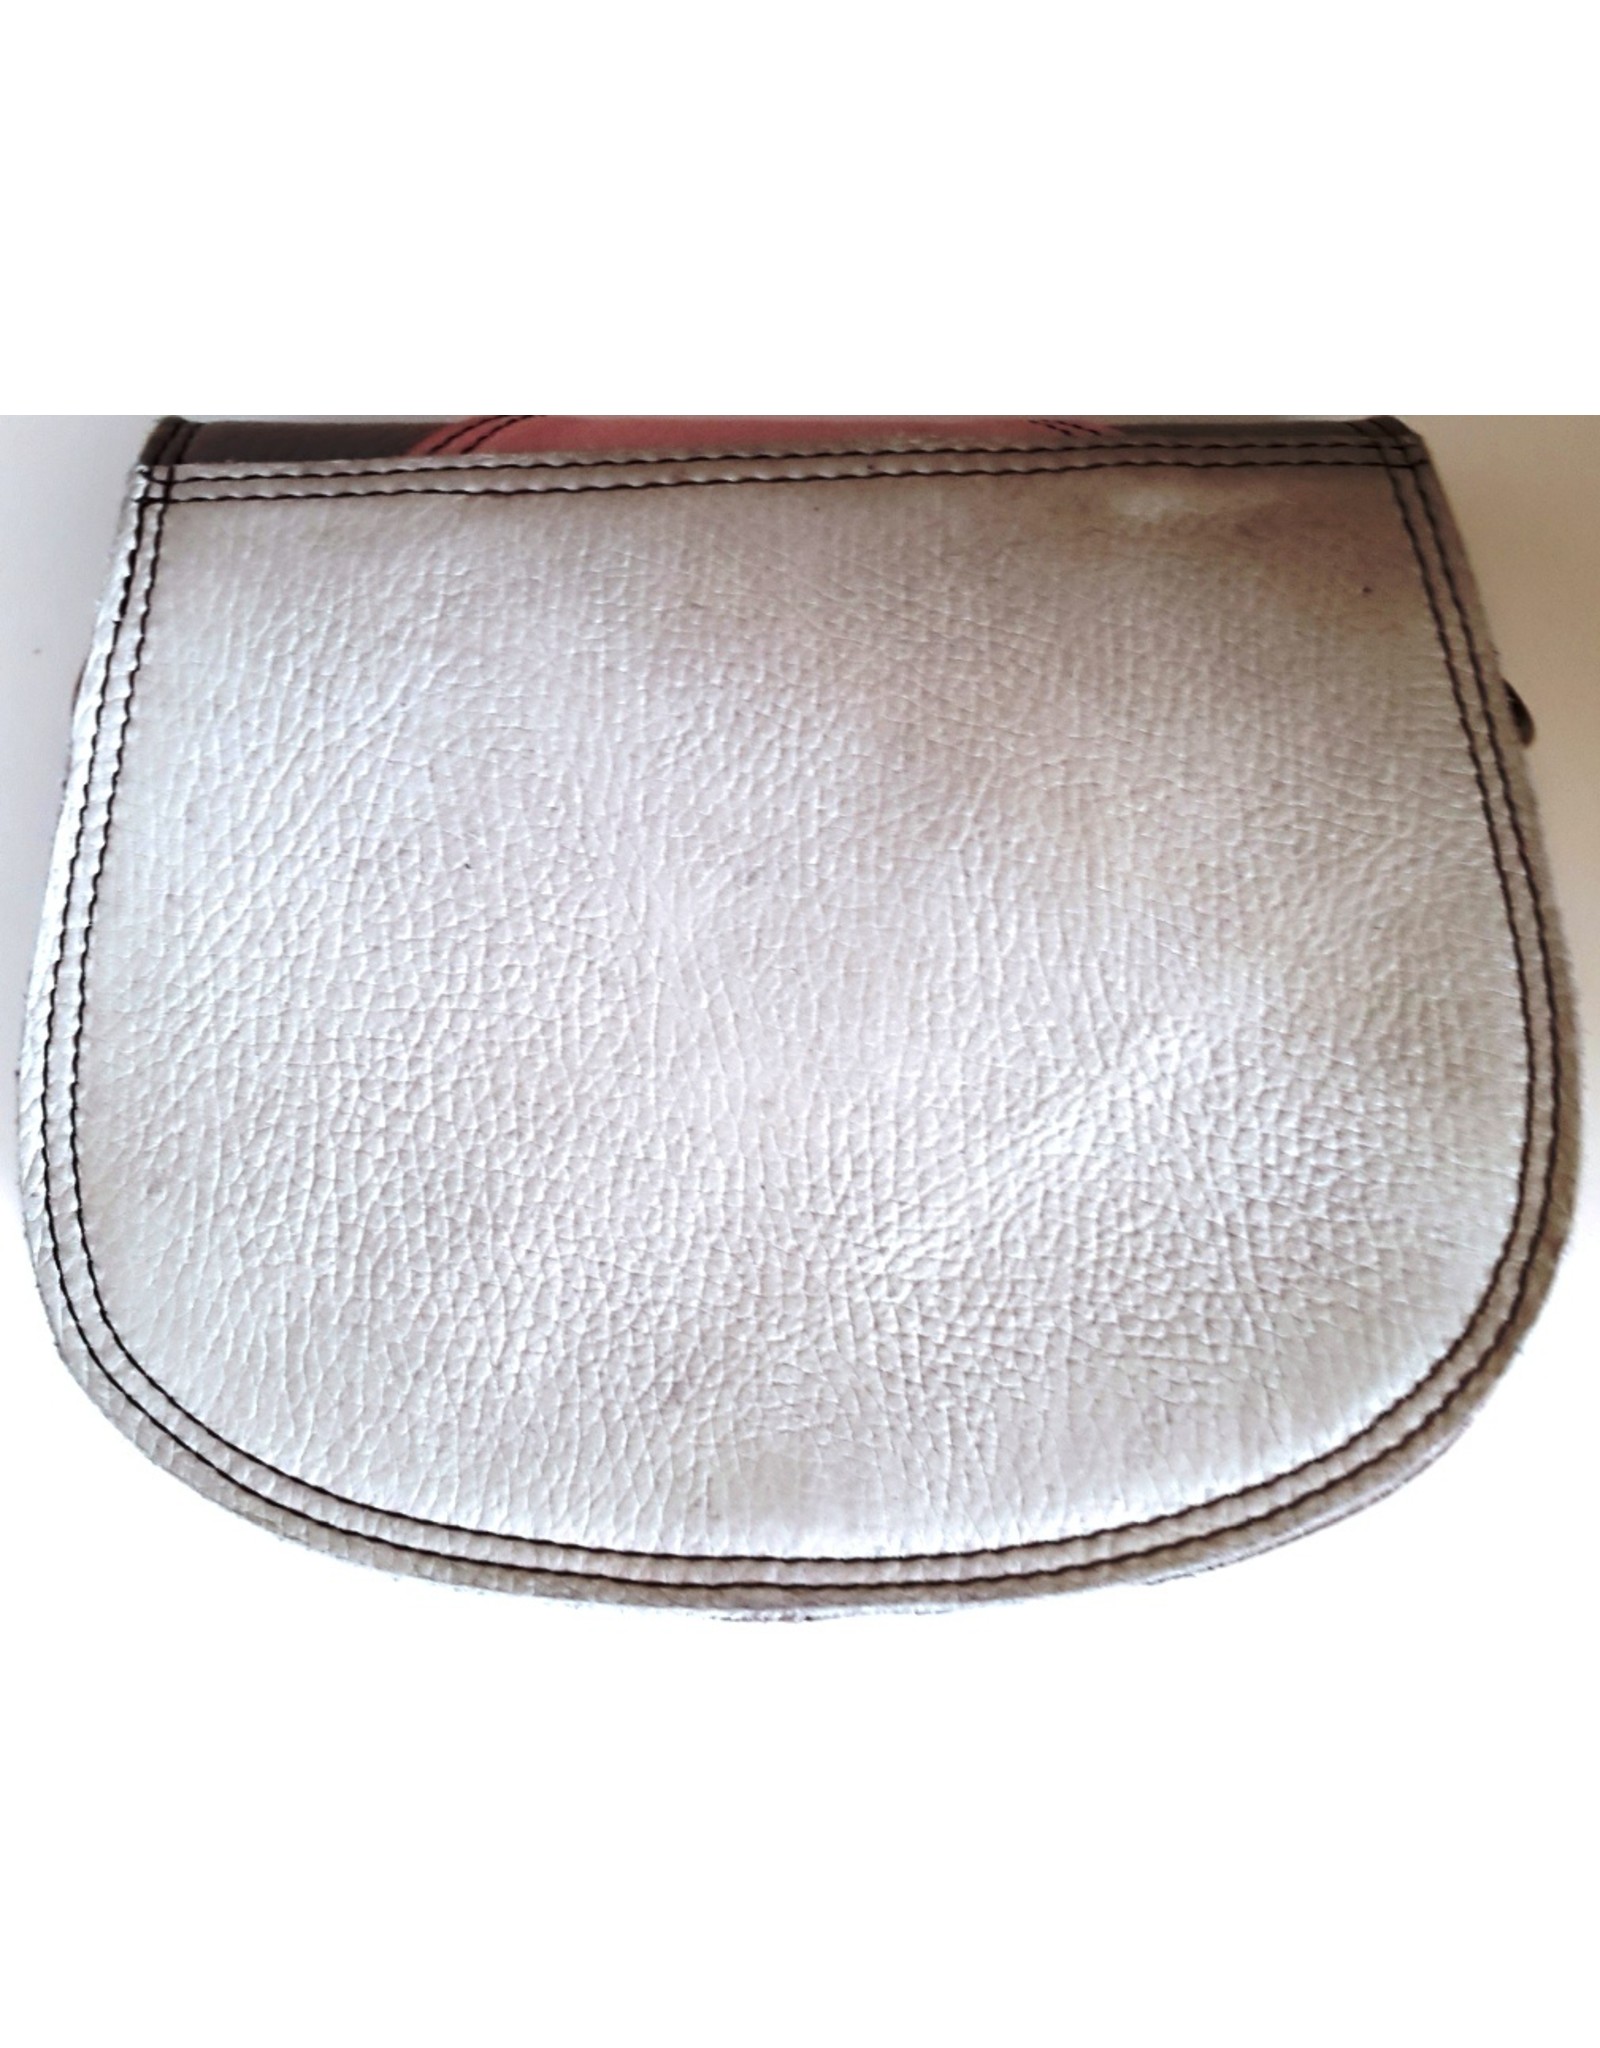 Trukado Leather Shoulder bags - Leather shoulder bag platinum